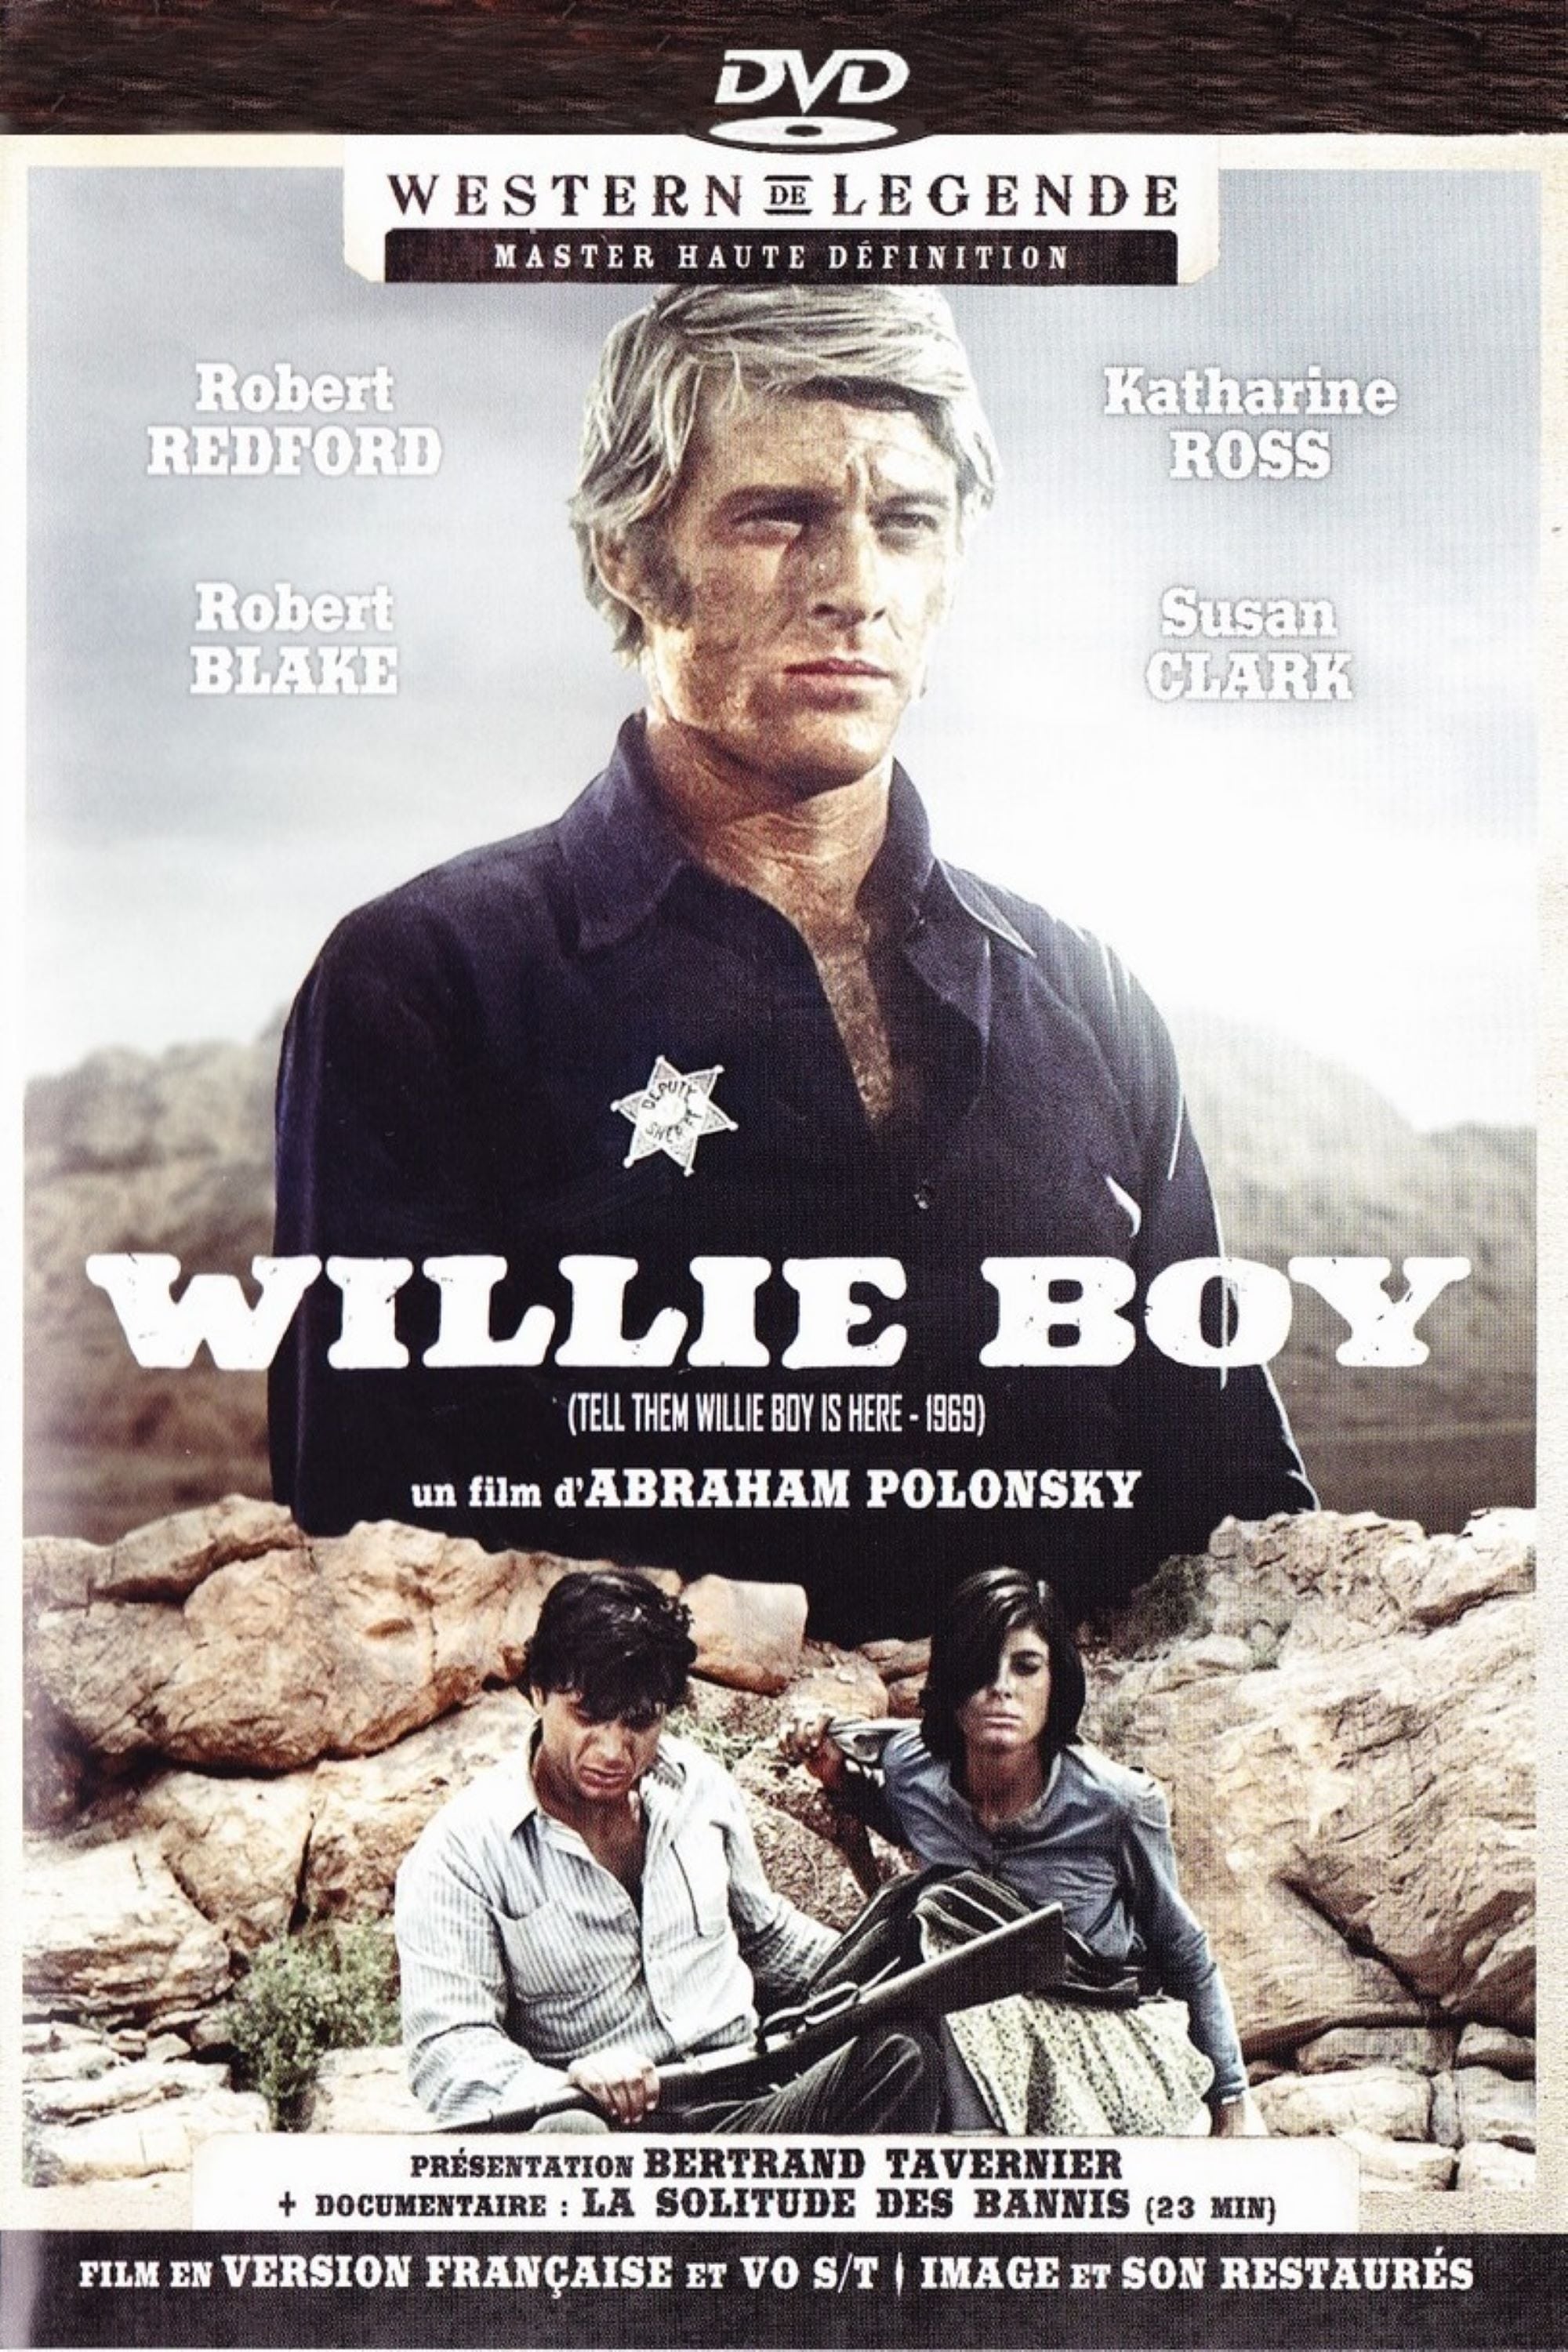 Willie Boy